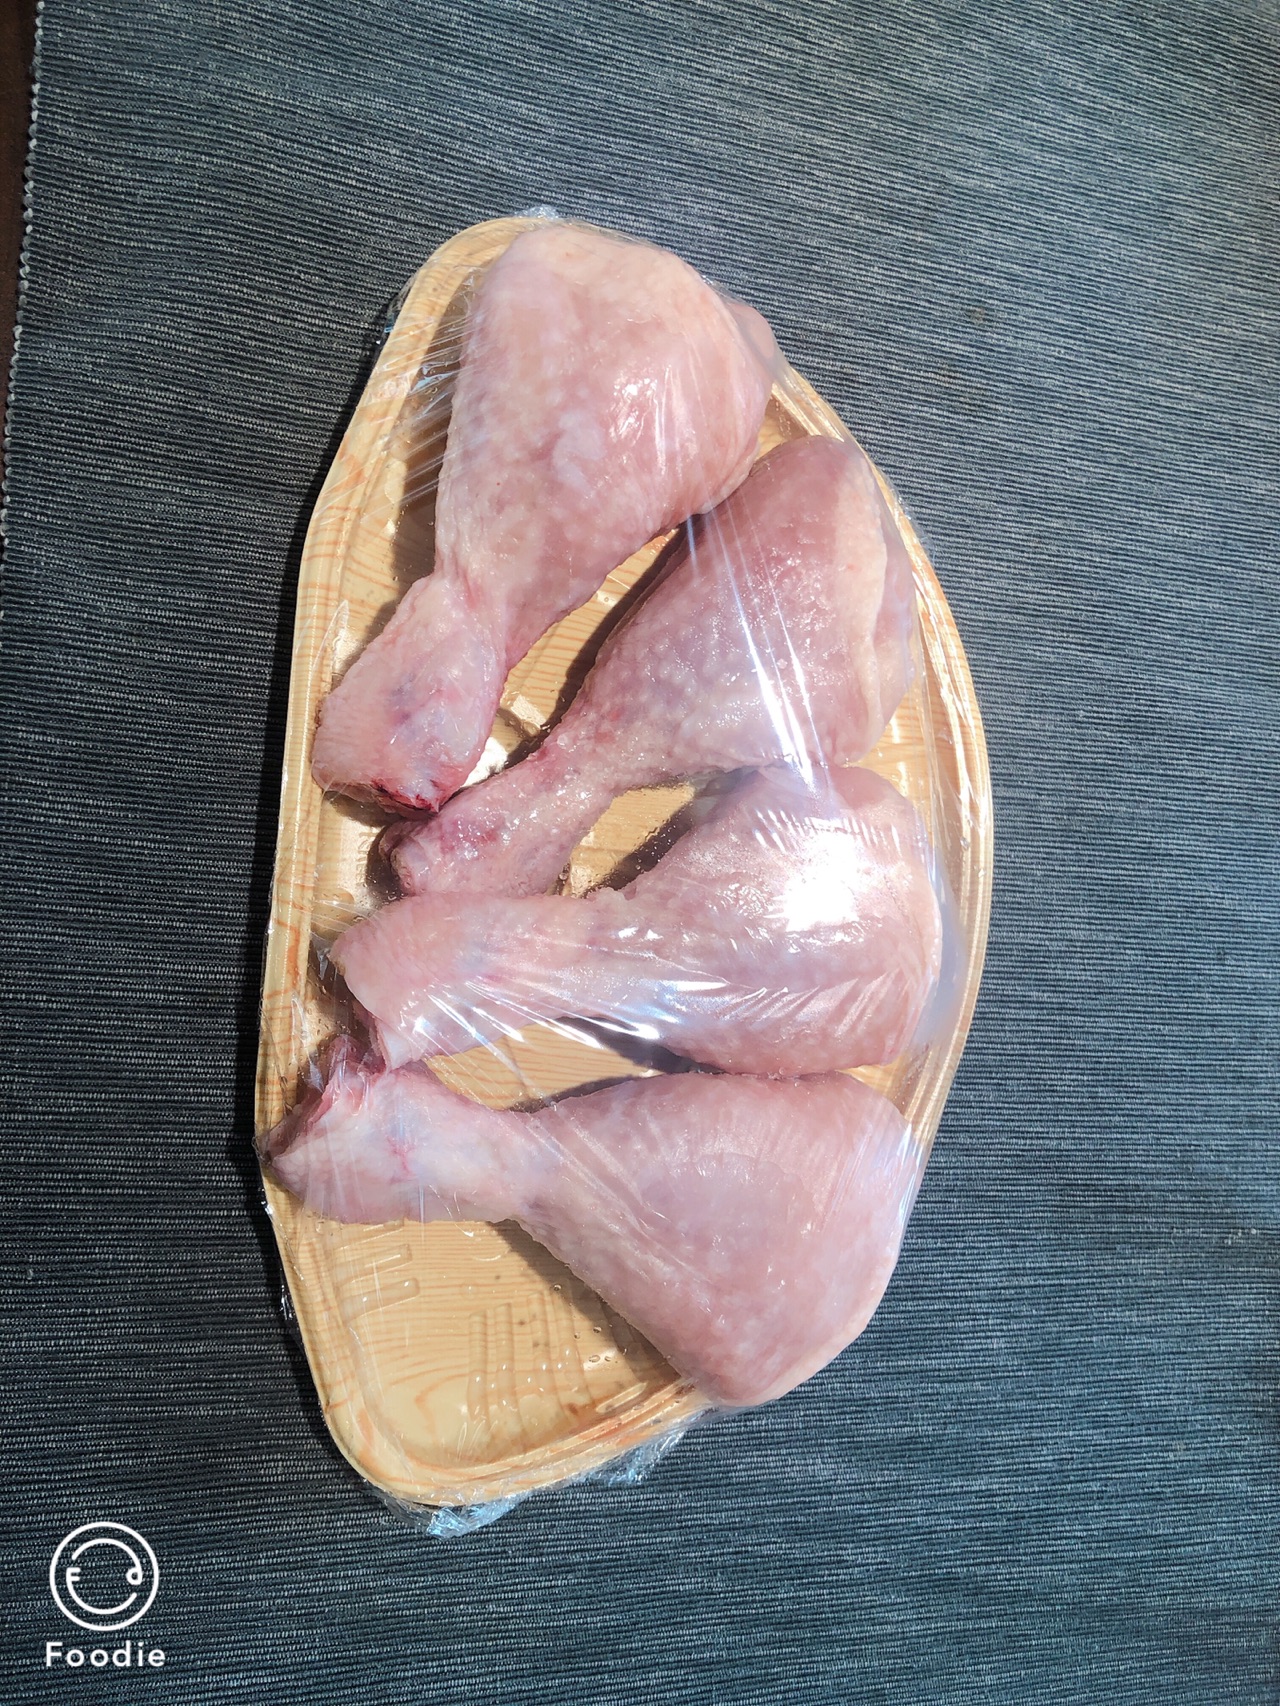 带皮去骨鸡腿肉毛毛肉乇乇正肉汉堡腿肉快餐上腿肉鸡扒11.4kg/件-阿里巴巴